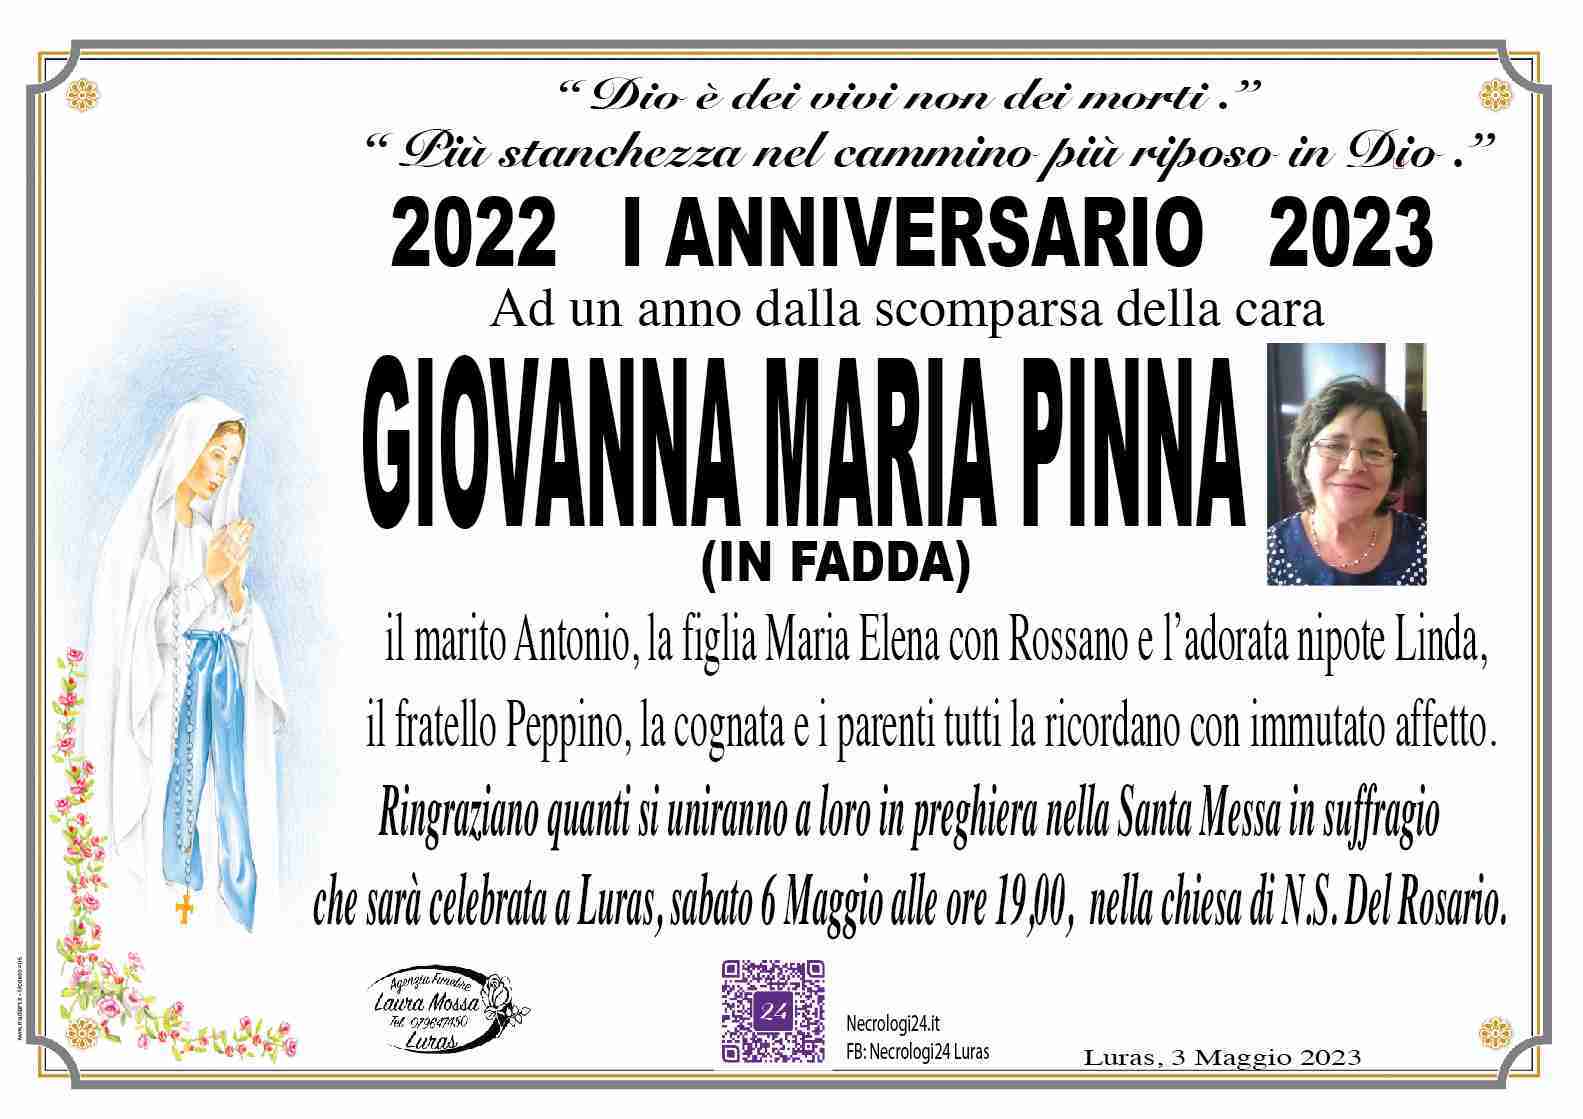 Giovanna Maria Pinna